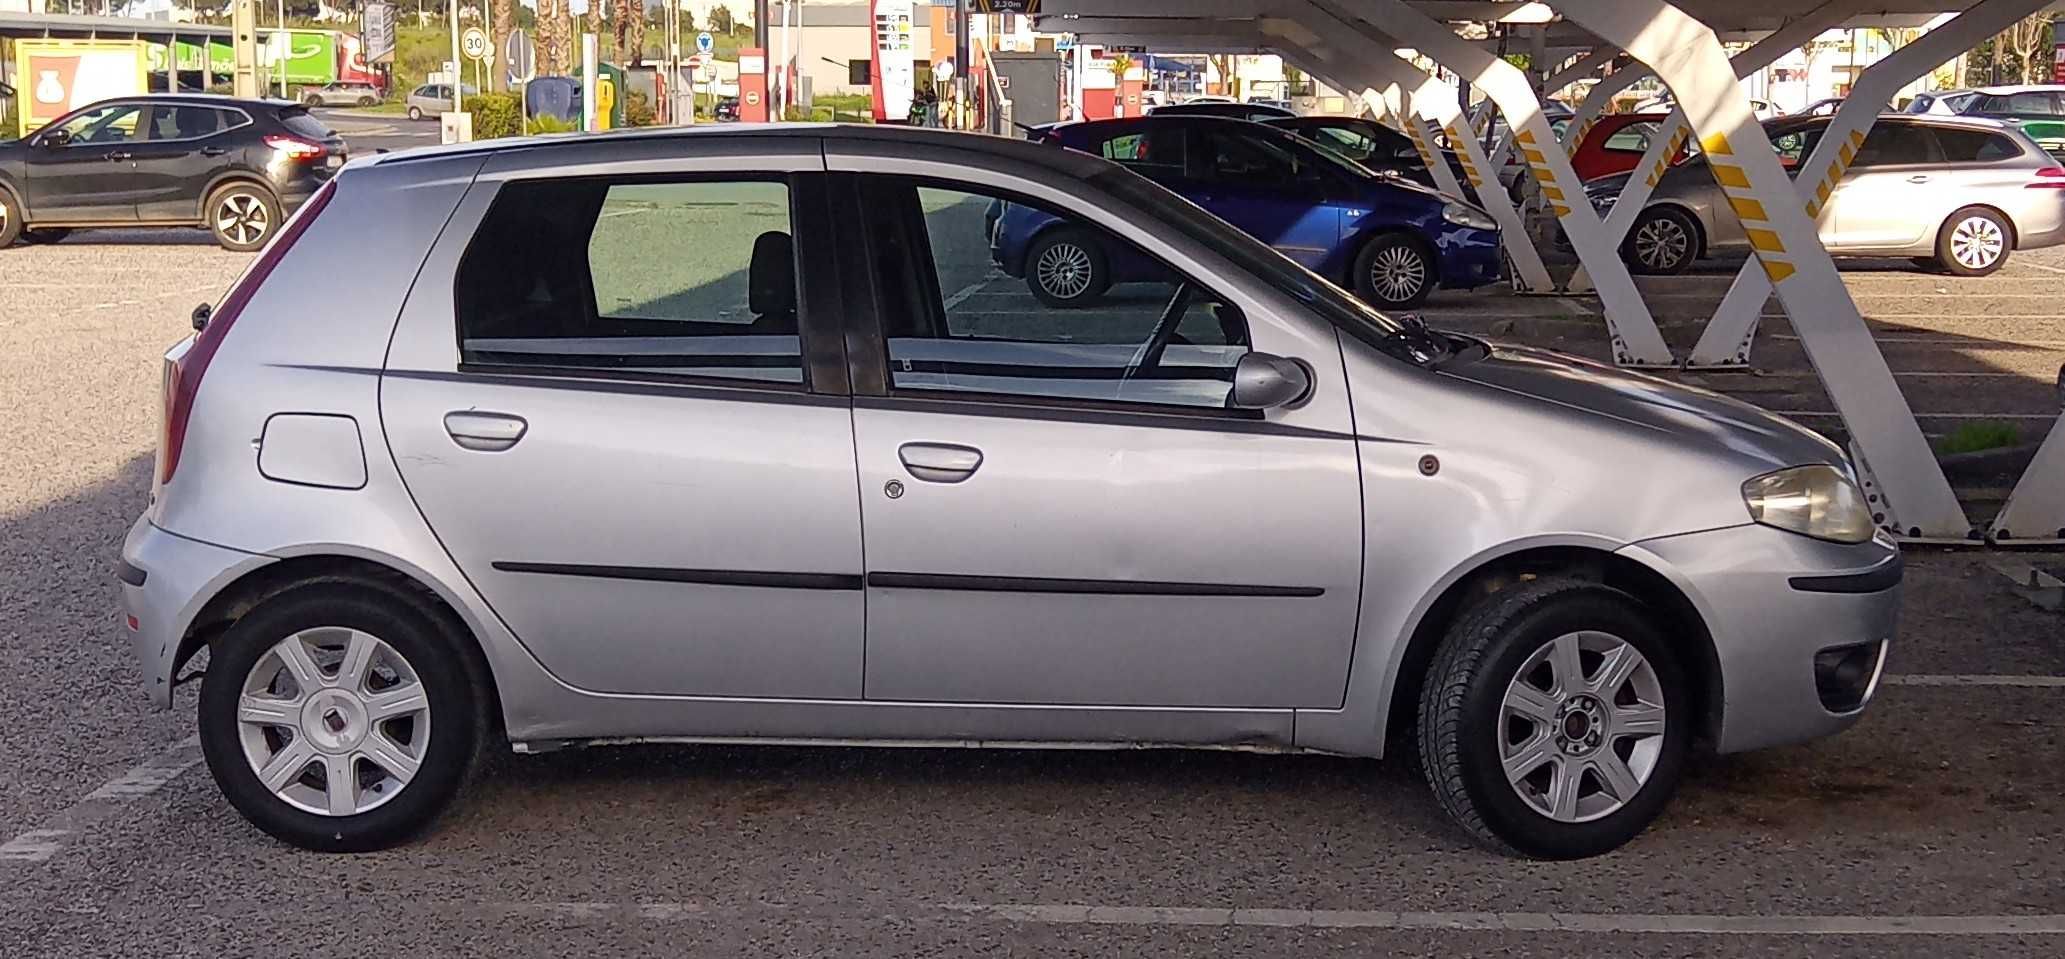 Fiat Punto 1.3 Multijet 5P